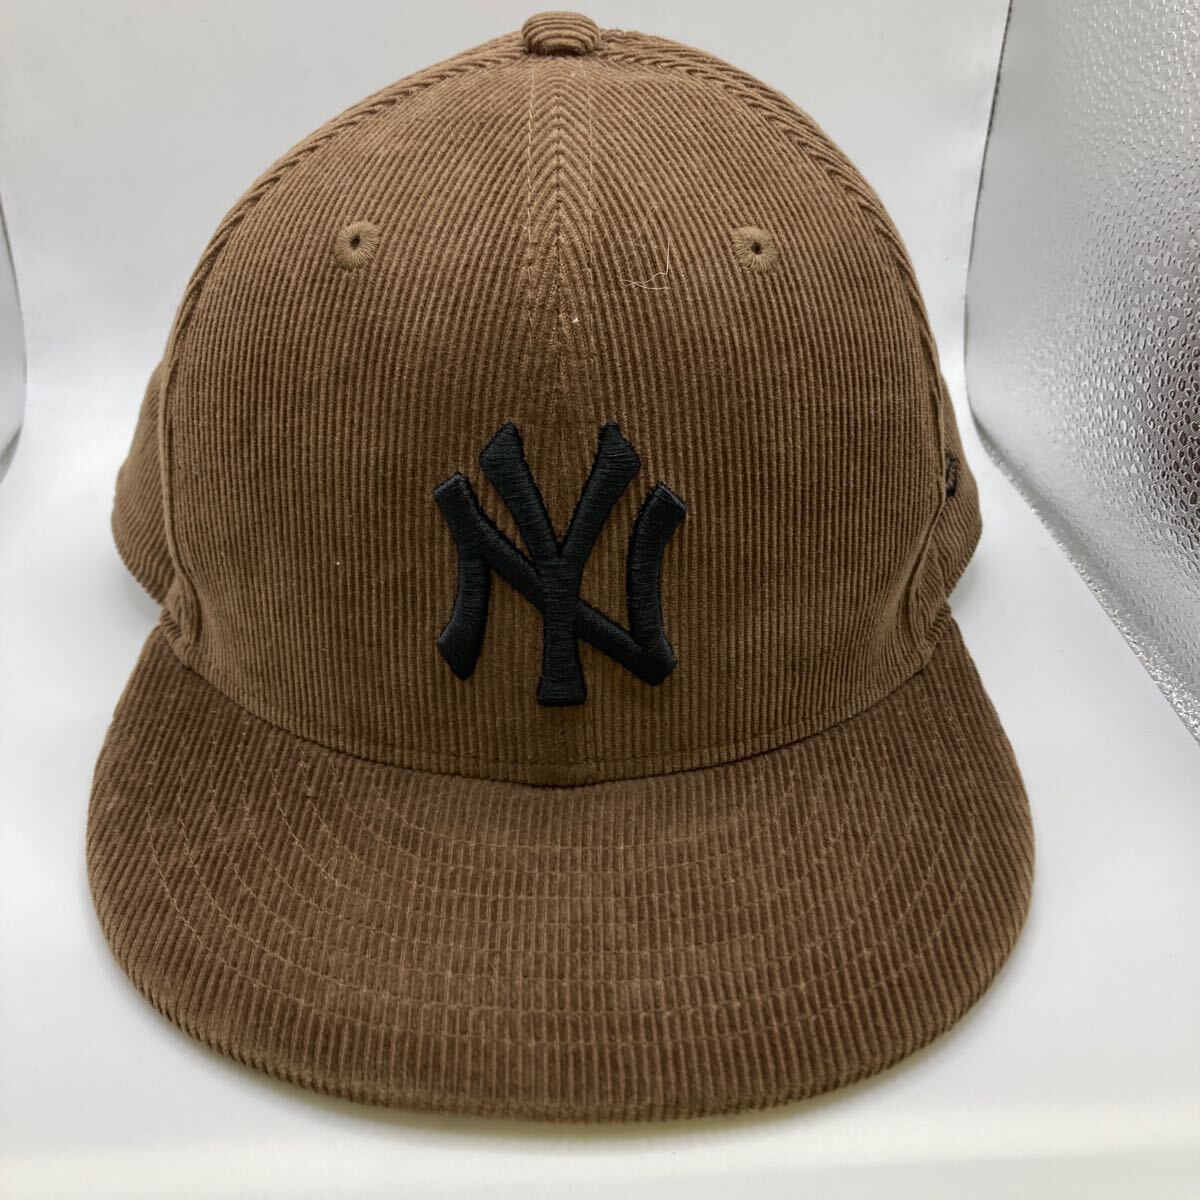 △【T-61】NEW ERA ニューエラ MLB NEW YORK YANKEES ヤンキース 59FIFTY ORIGINAL FIT コーデュロイ素材 ブラウン ロゴ刺繍 キャップの画像1